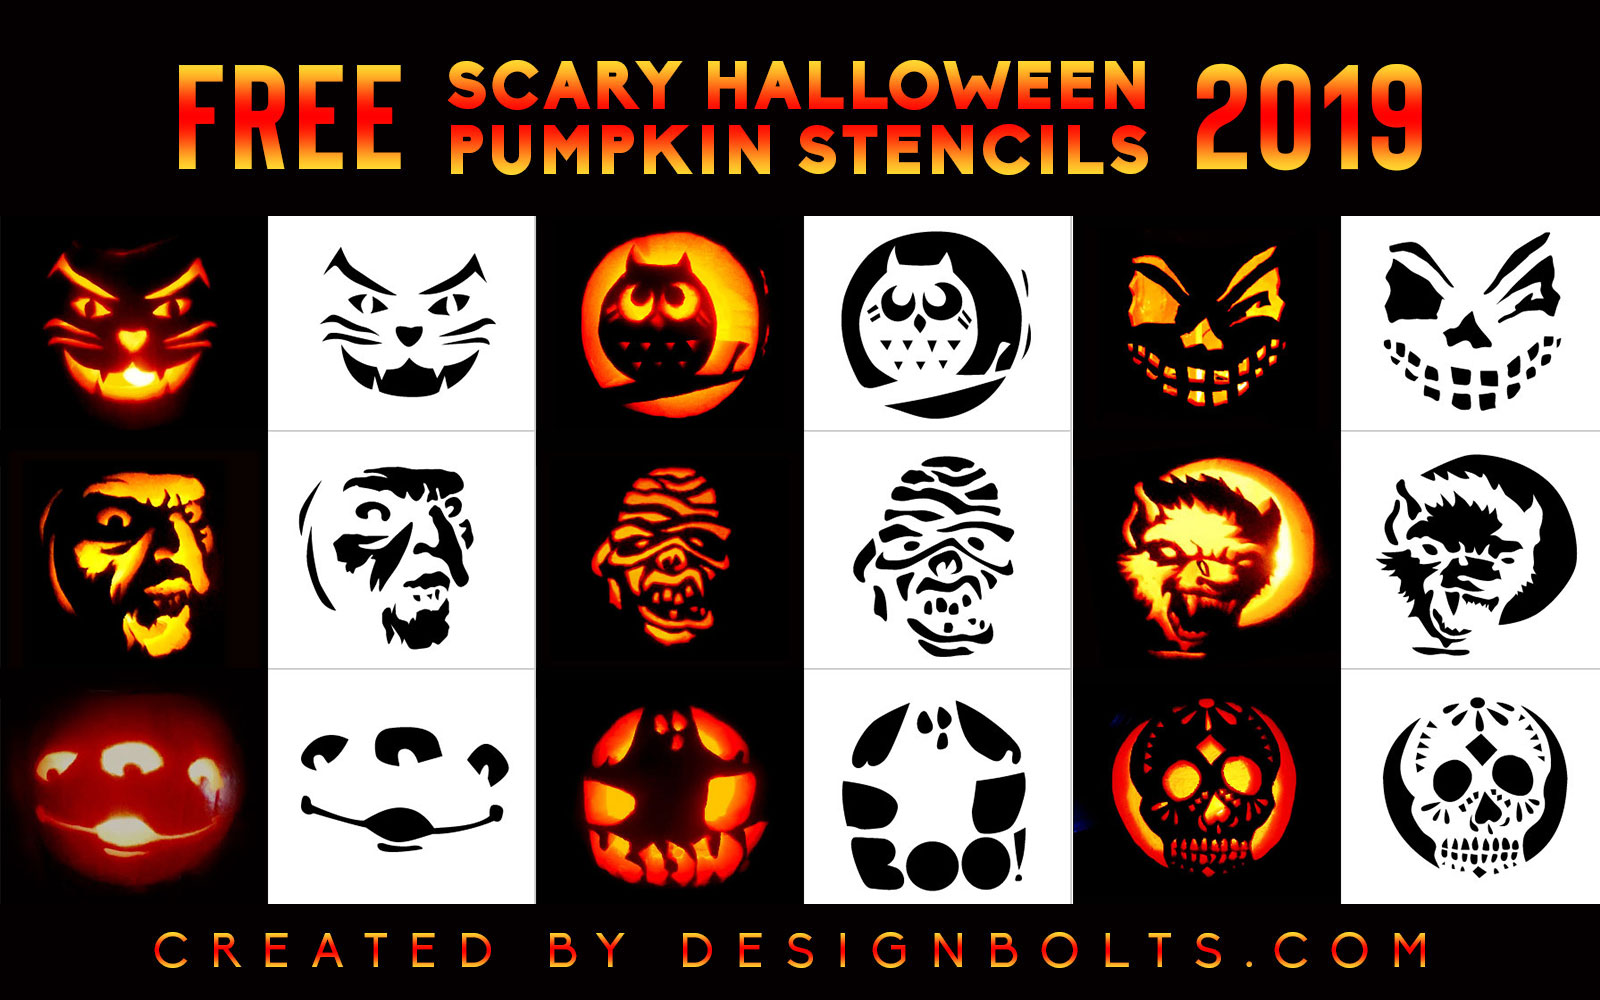 10-scary-halloween-pumpkin-carving-stencils-ideas-patterns-for-2019-designbolts